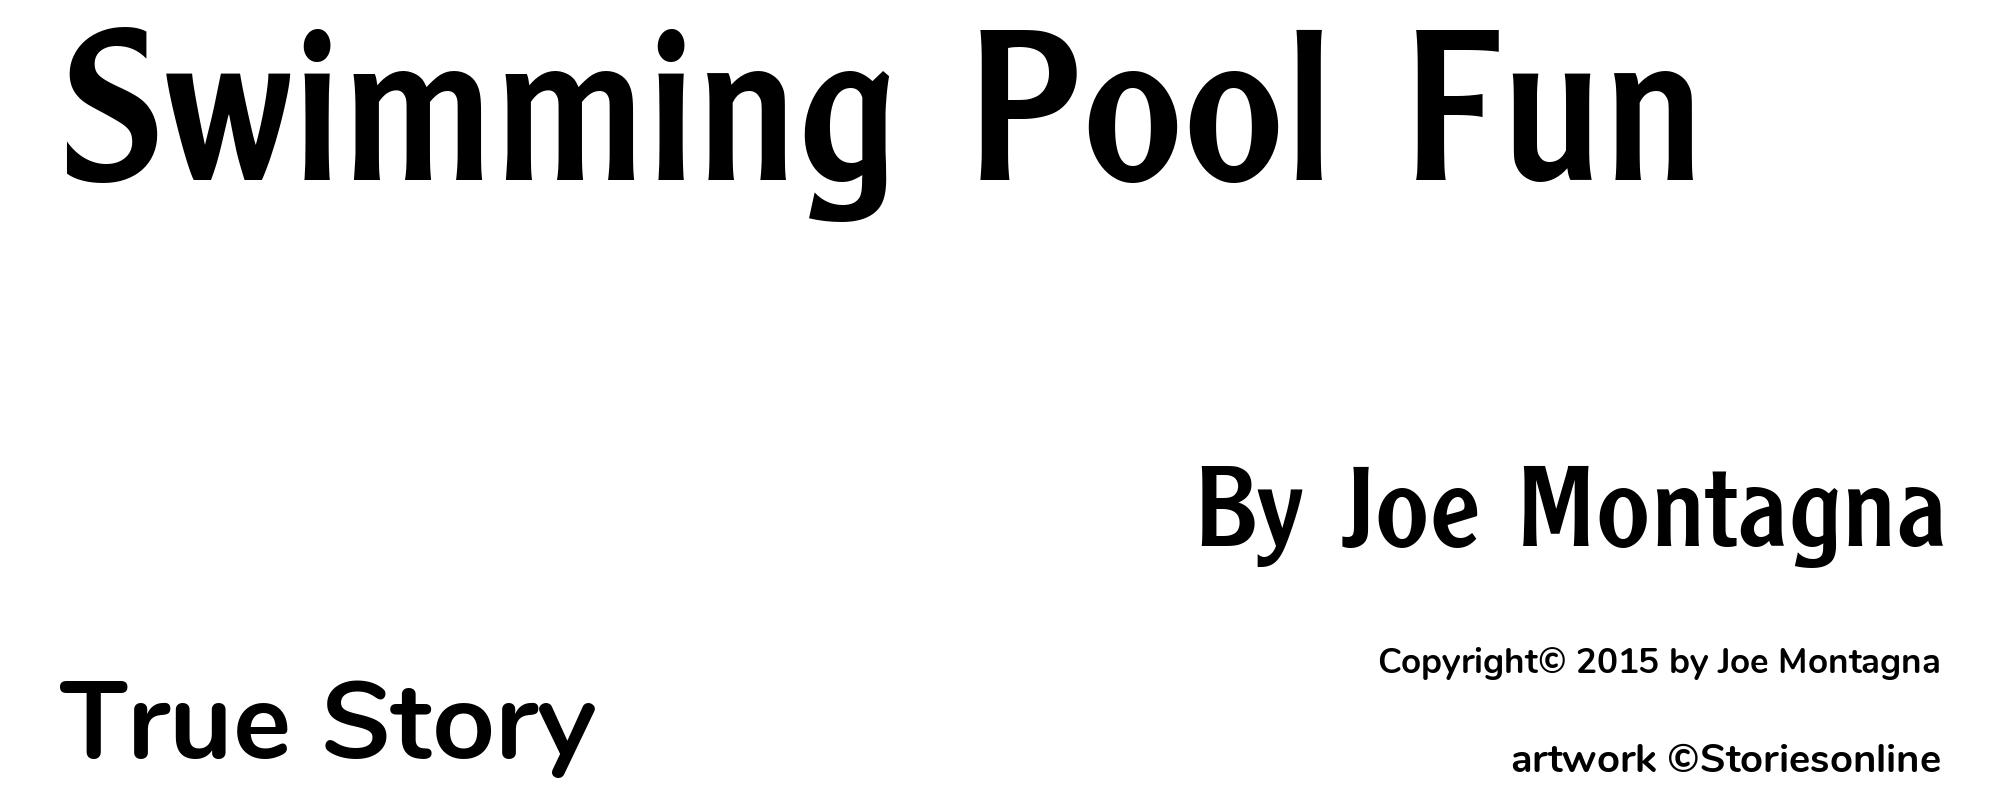 Swimming Pool Fun - Cover